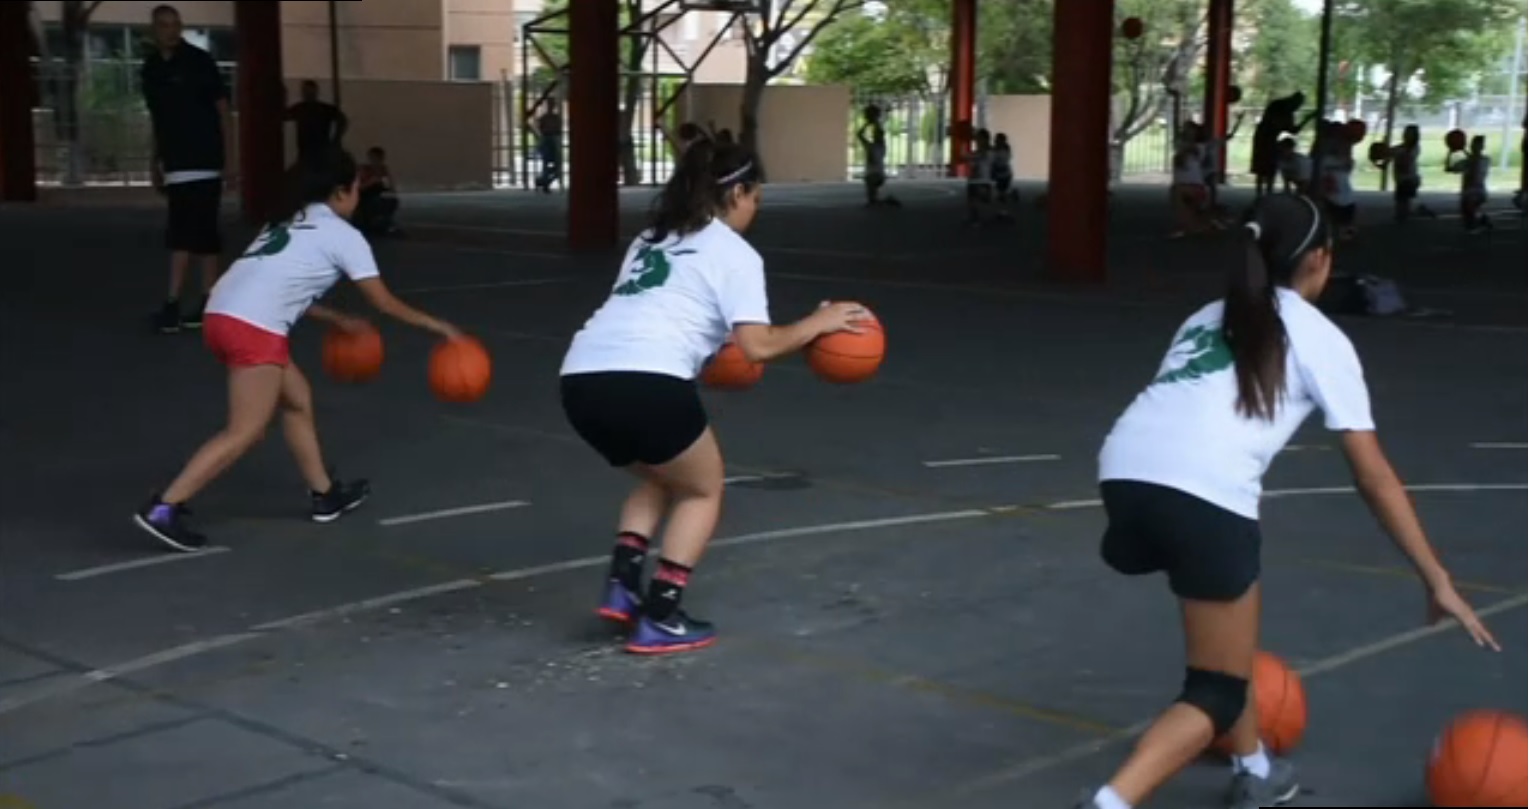 Jovencitas practican el basquetbol en Apodaca nuevo leon